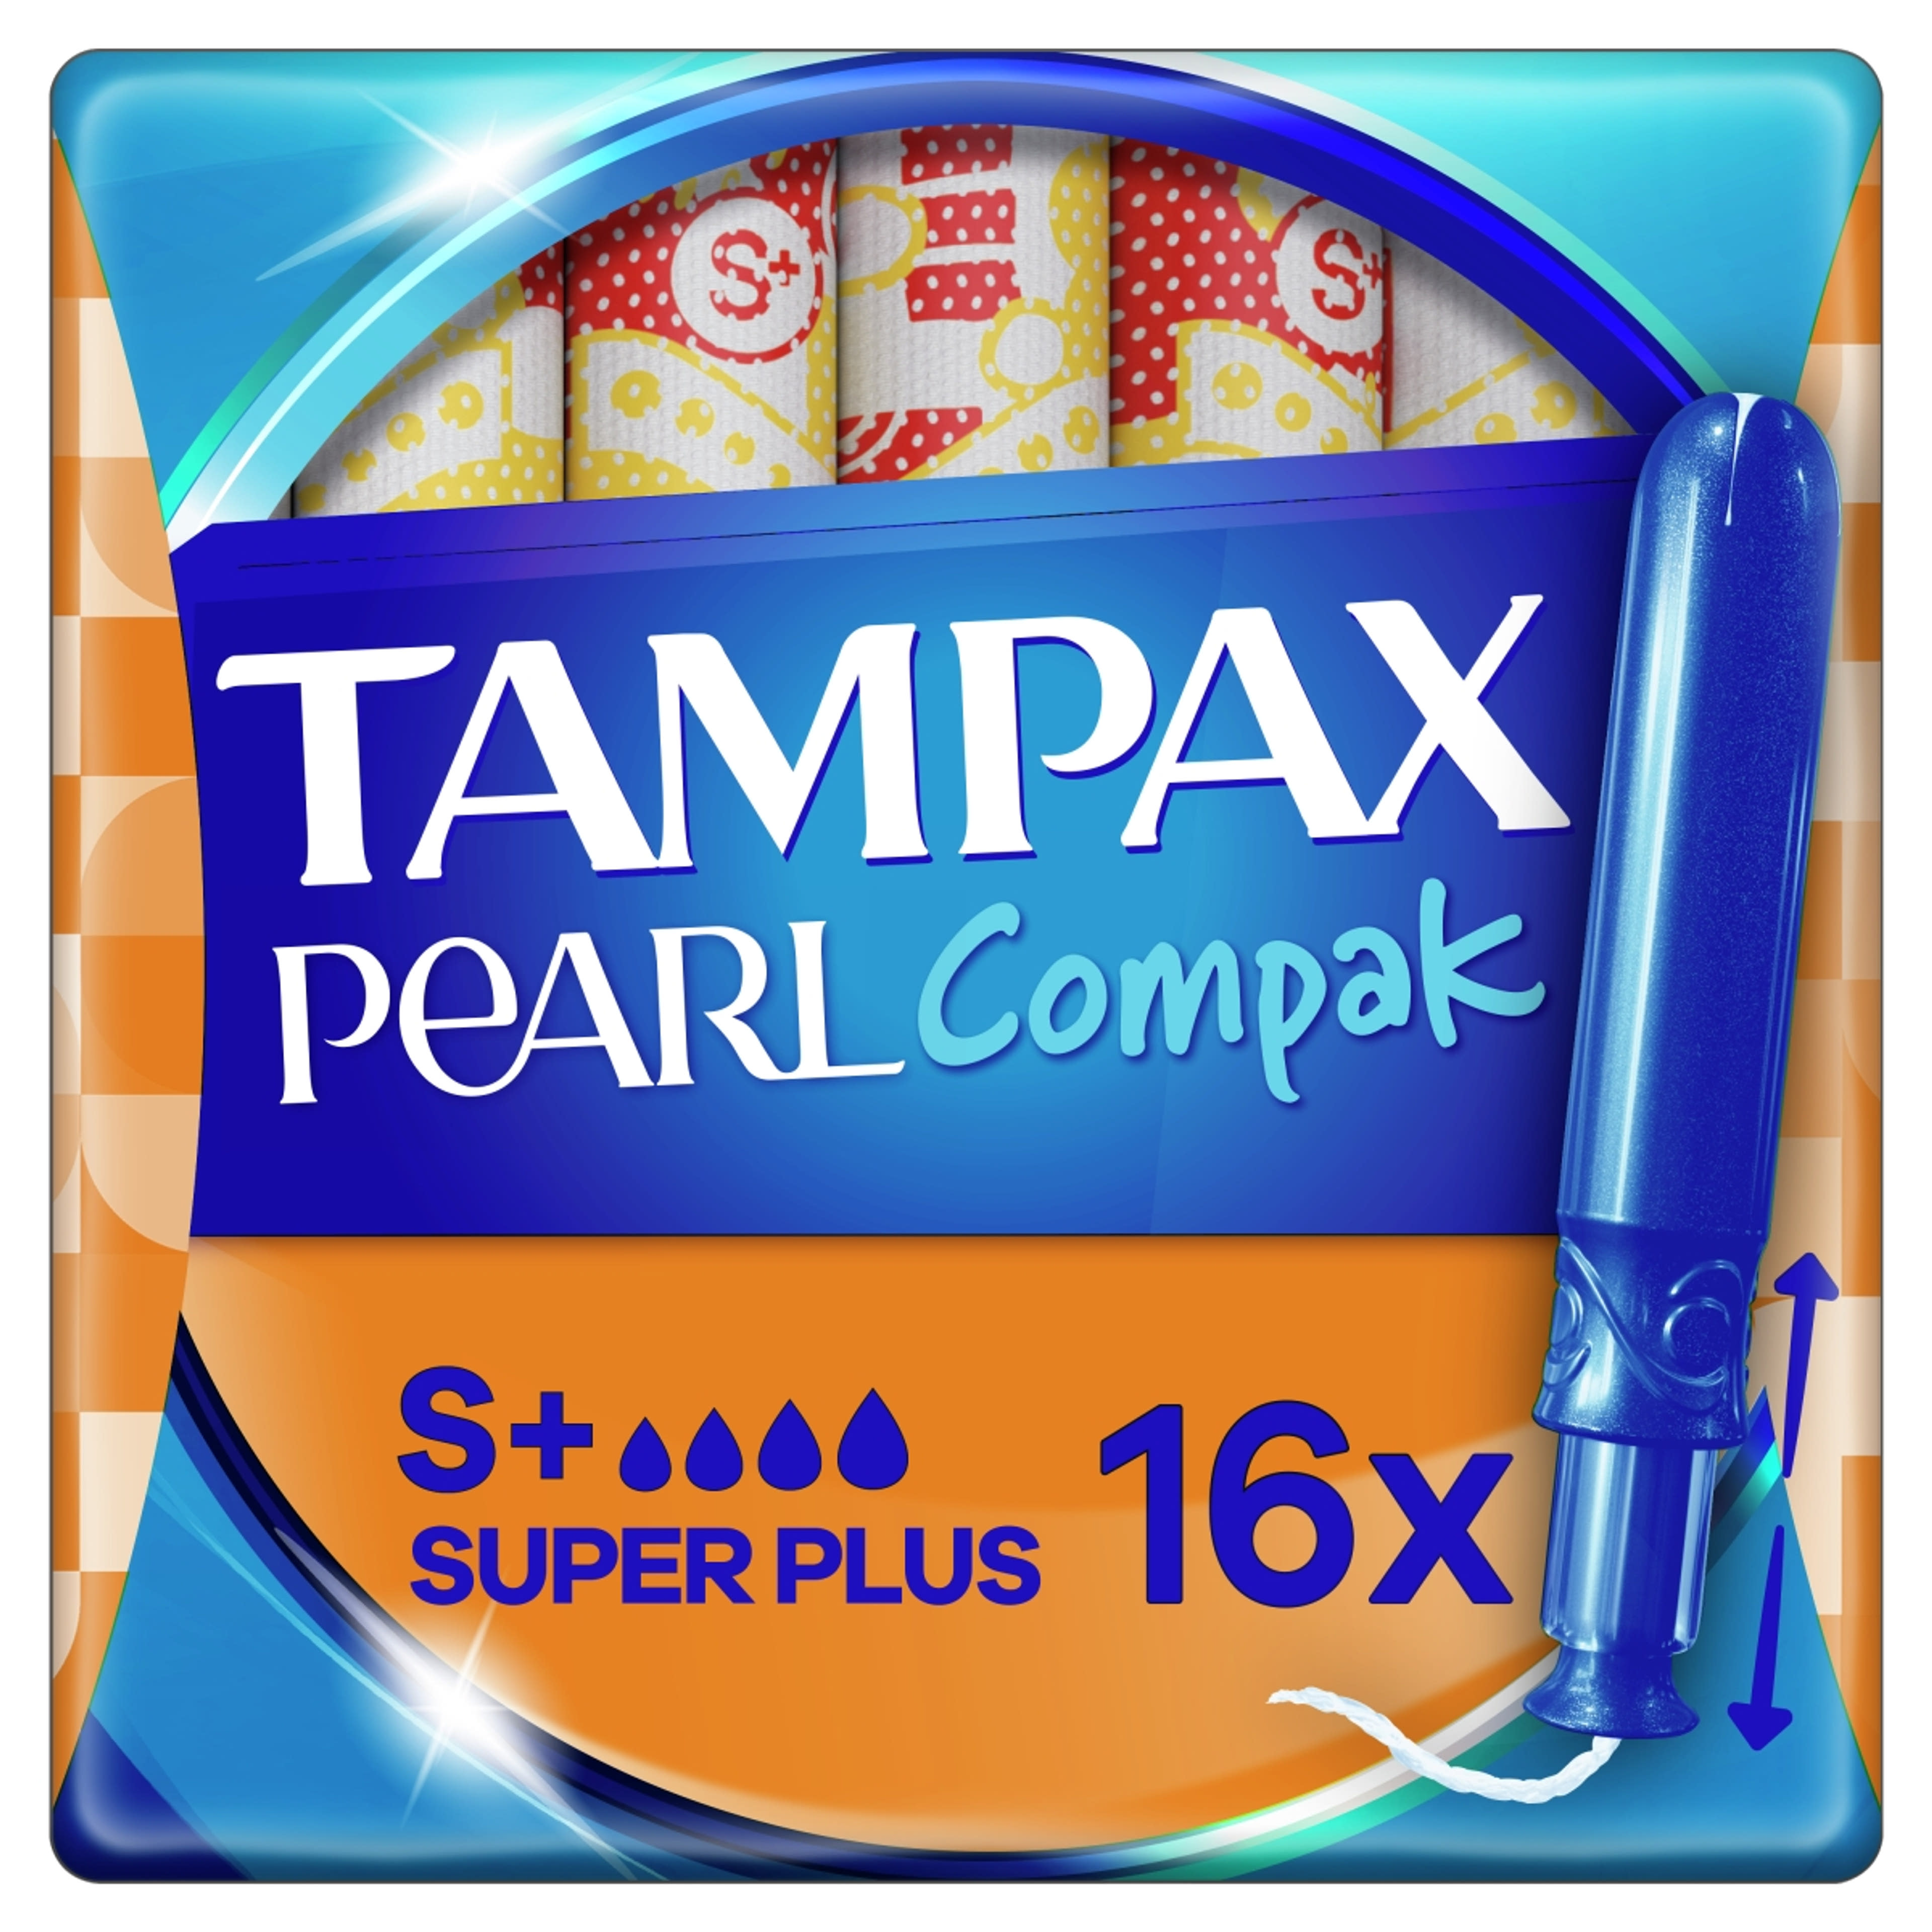 Tampax tampon compak pearl super plus - 16 db-6